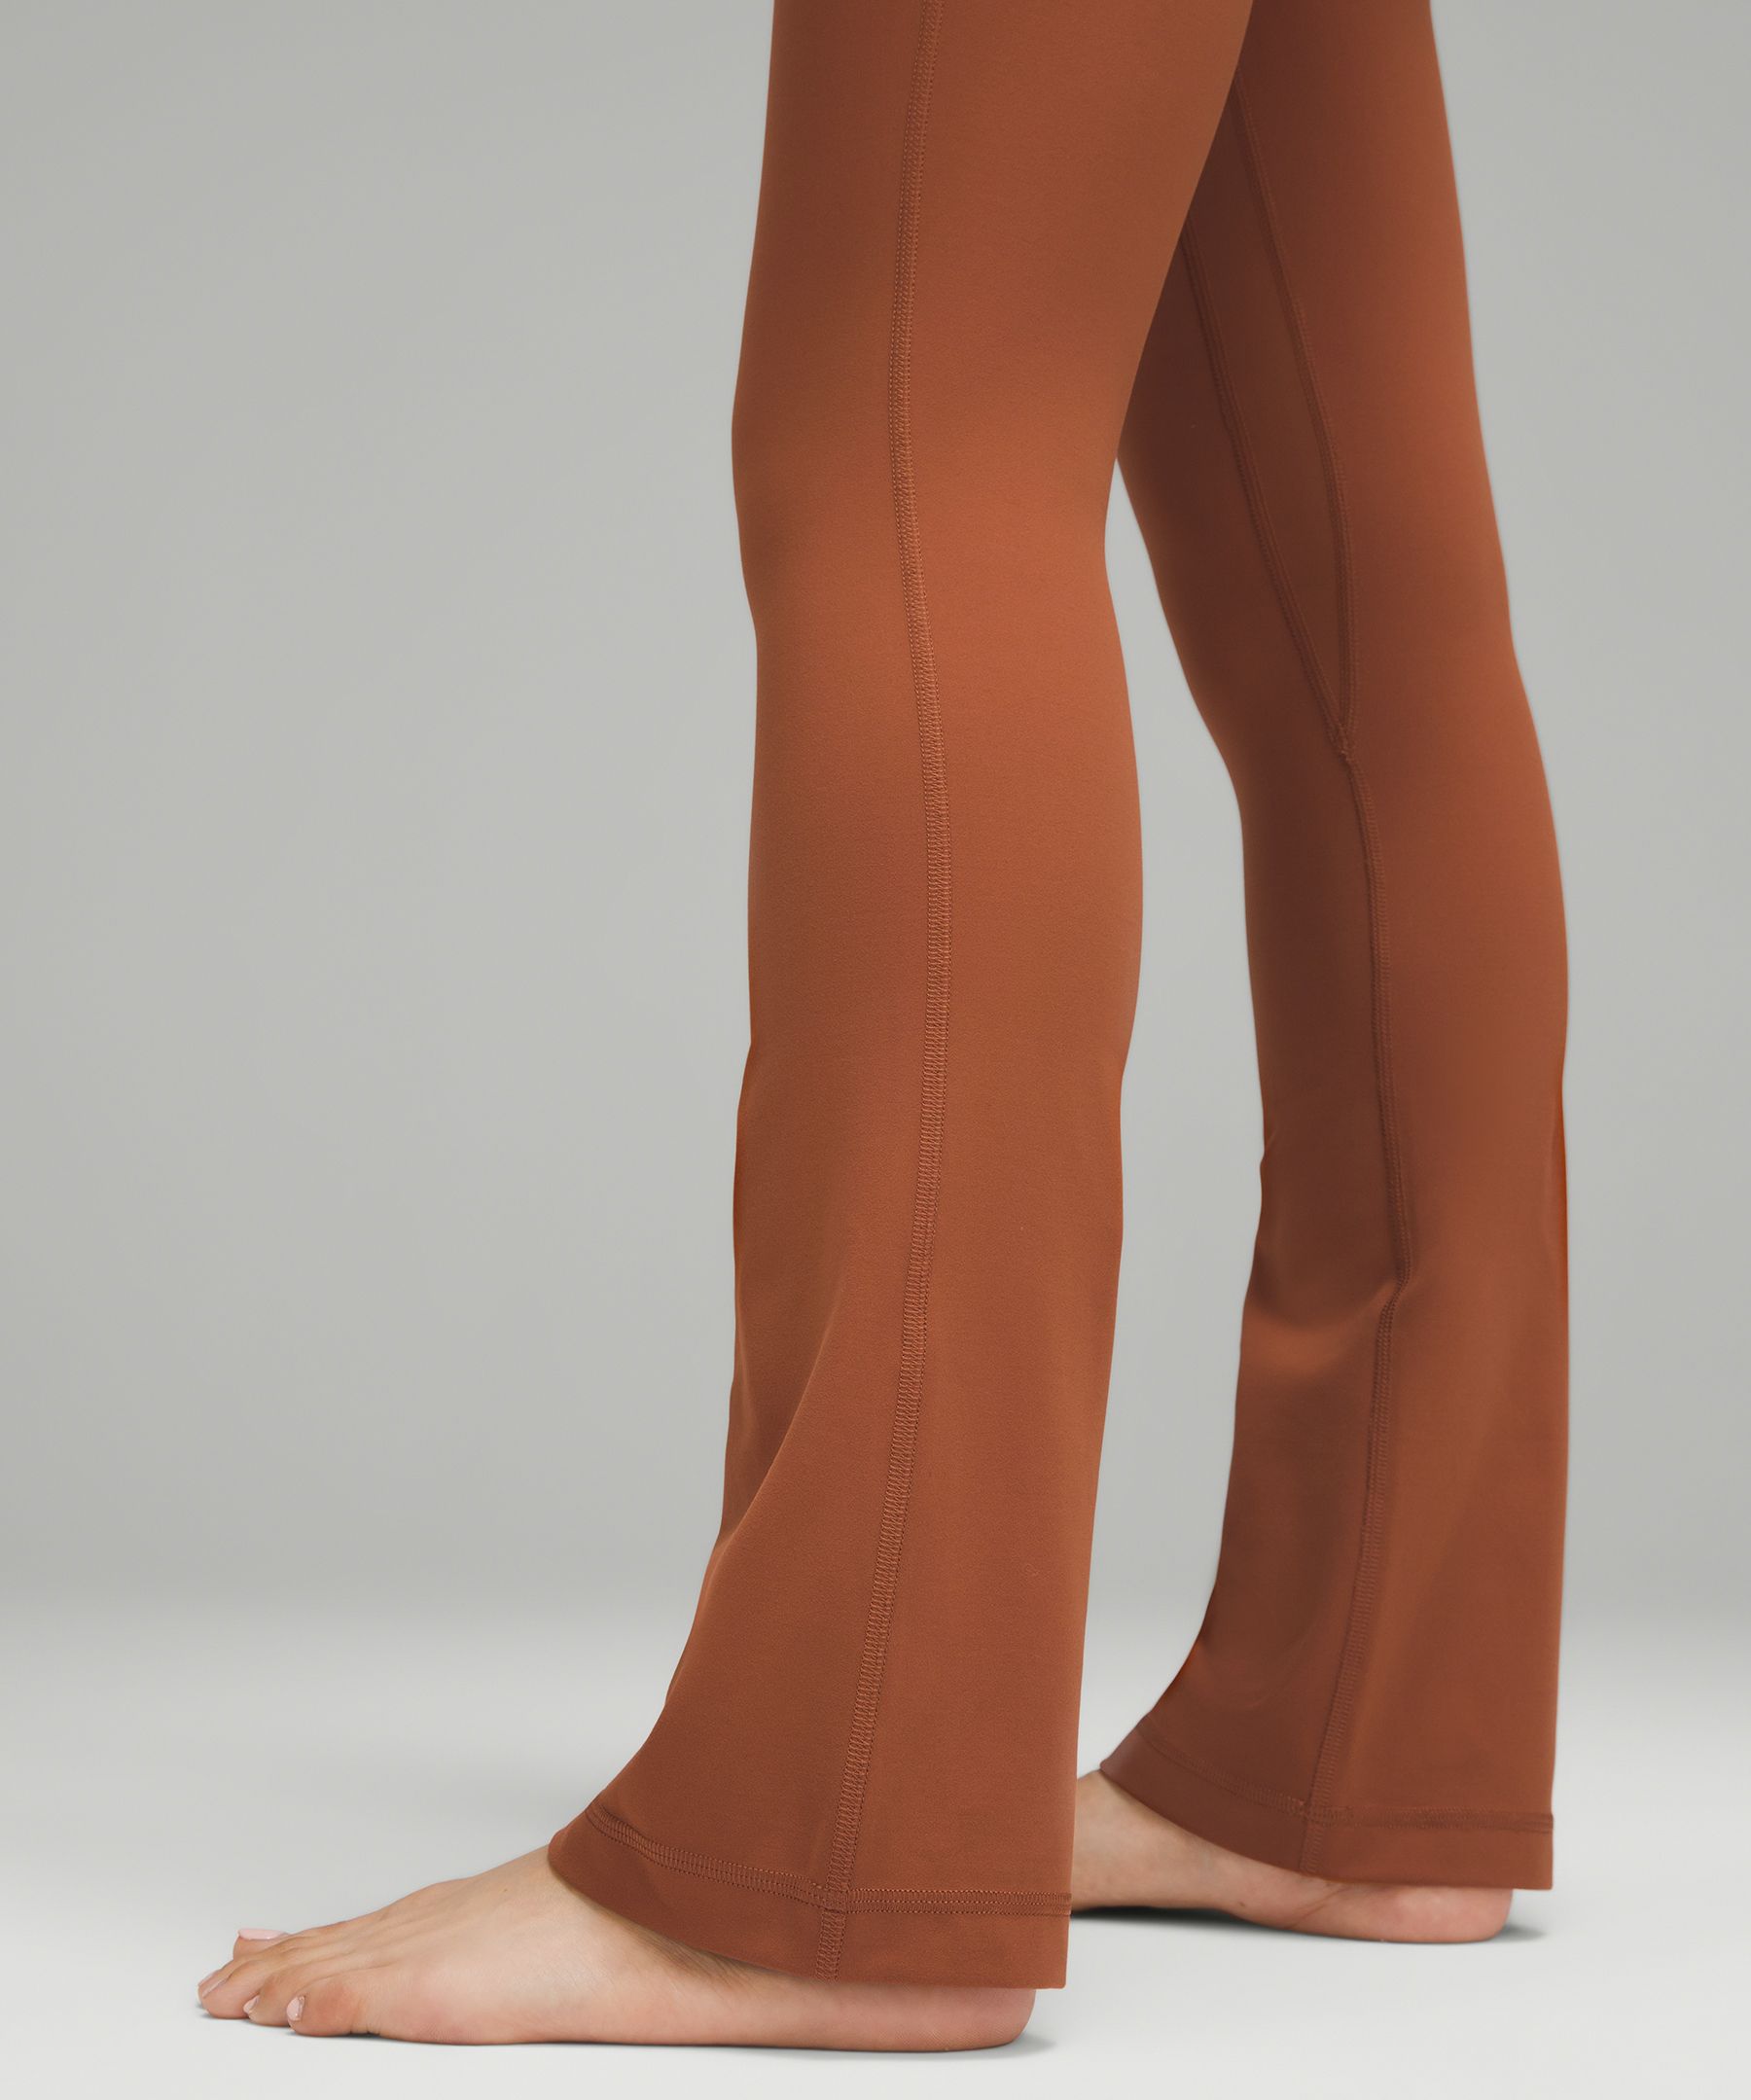 lululemon Align™ High-Rise Mini-Flared Pant *Extra Short, Women's Leggings/ Tights